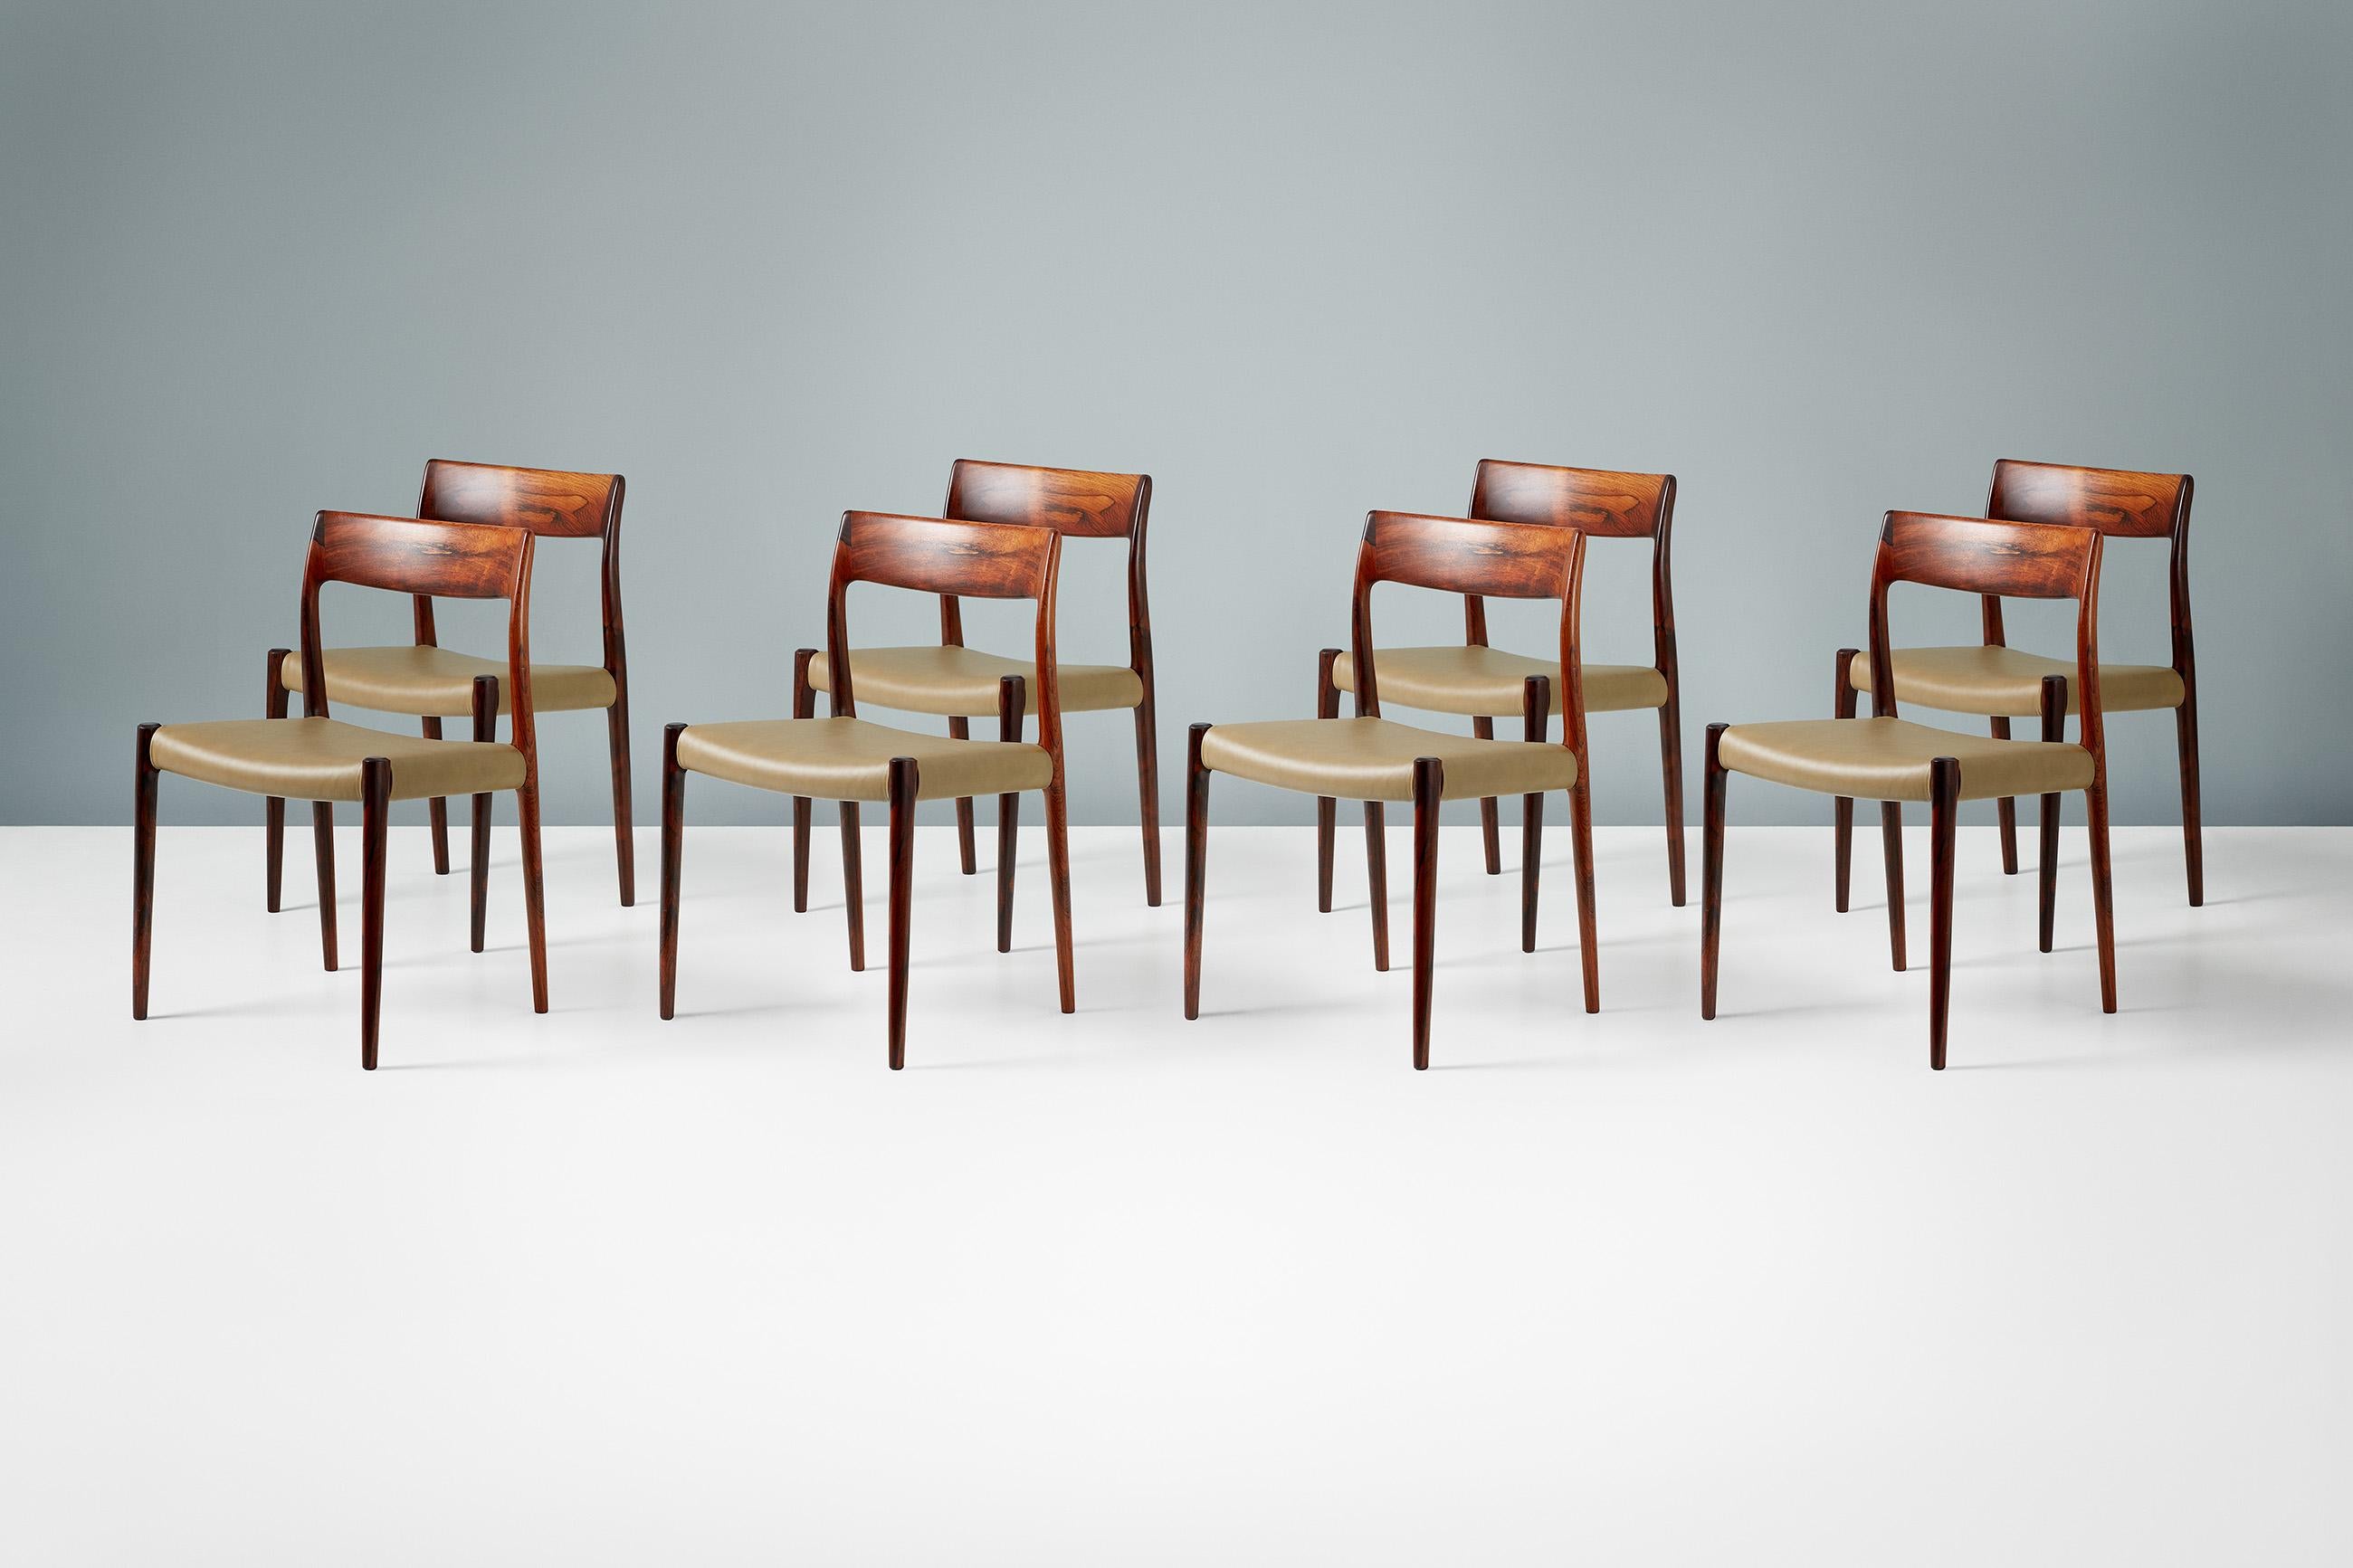 Niels Moller

Esszimmerstühle Modell 77, 1959

Satz von 8 Stühlen aus Palisanderholz, entworfen von Niels O. Moller für J.L. Moller Mobelfabrik, Dänemark, 1959. Produziert in den 1960er Jahren. Die Sitze wurden mit neuem grünem Anilinleder